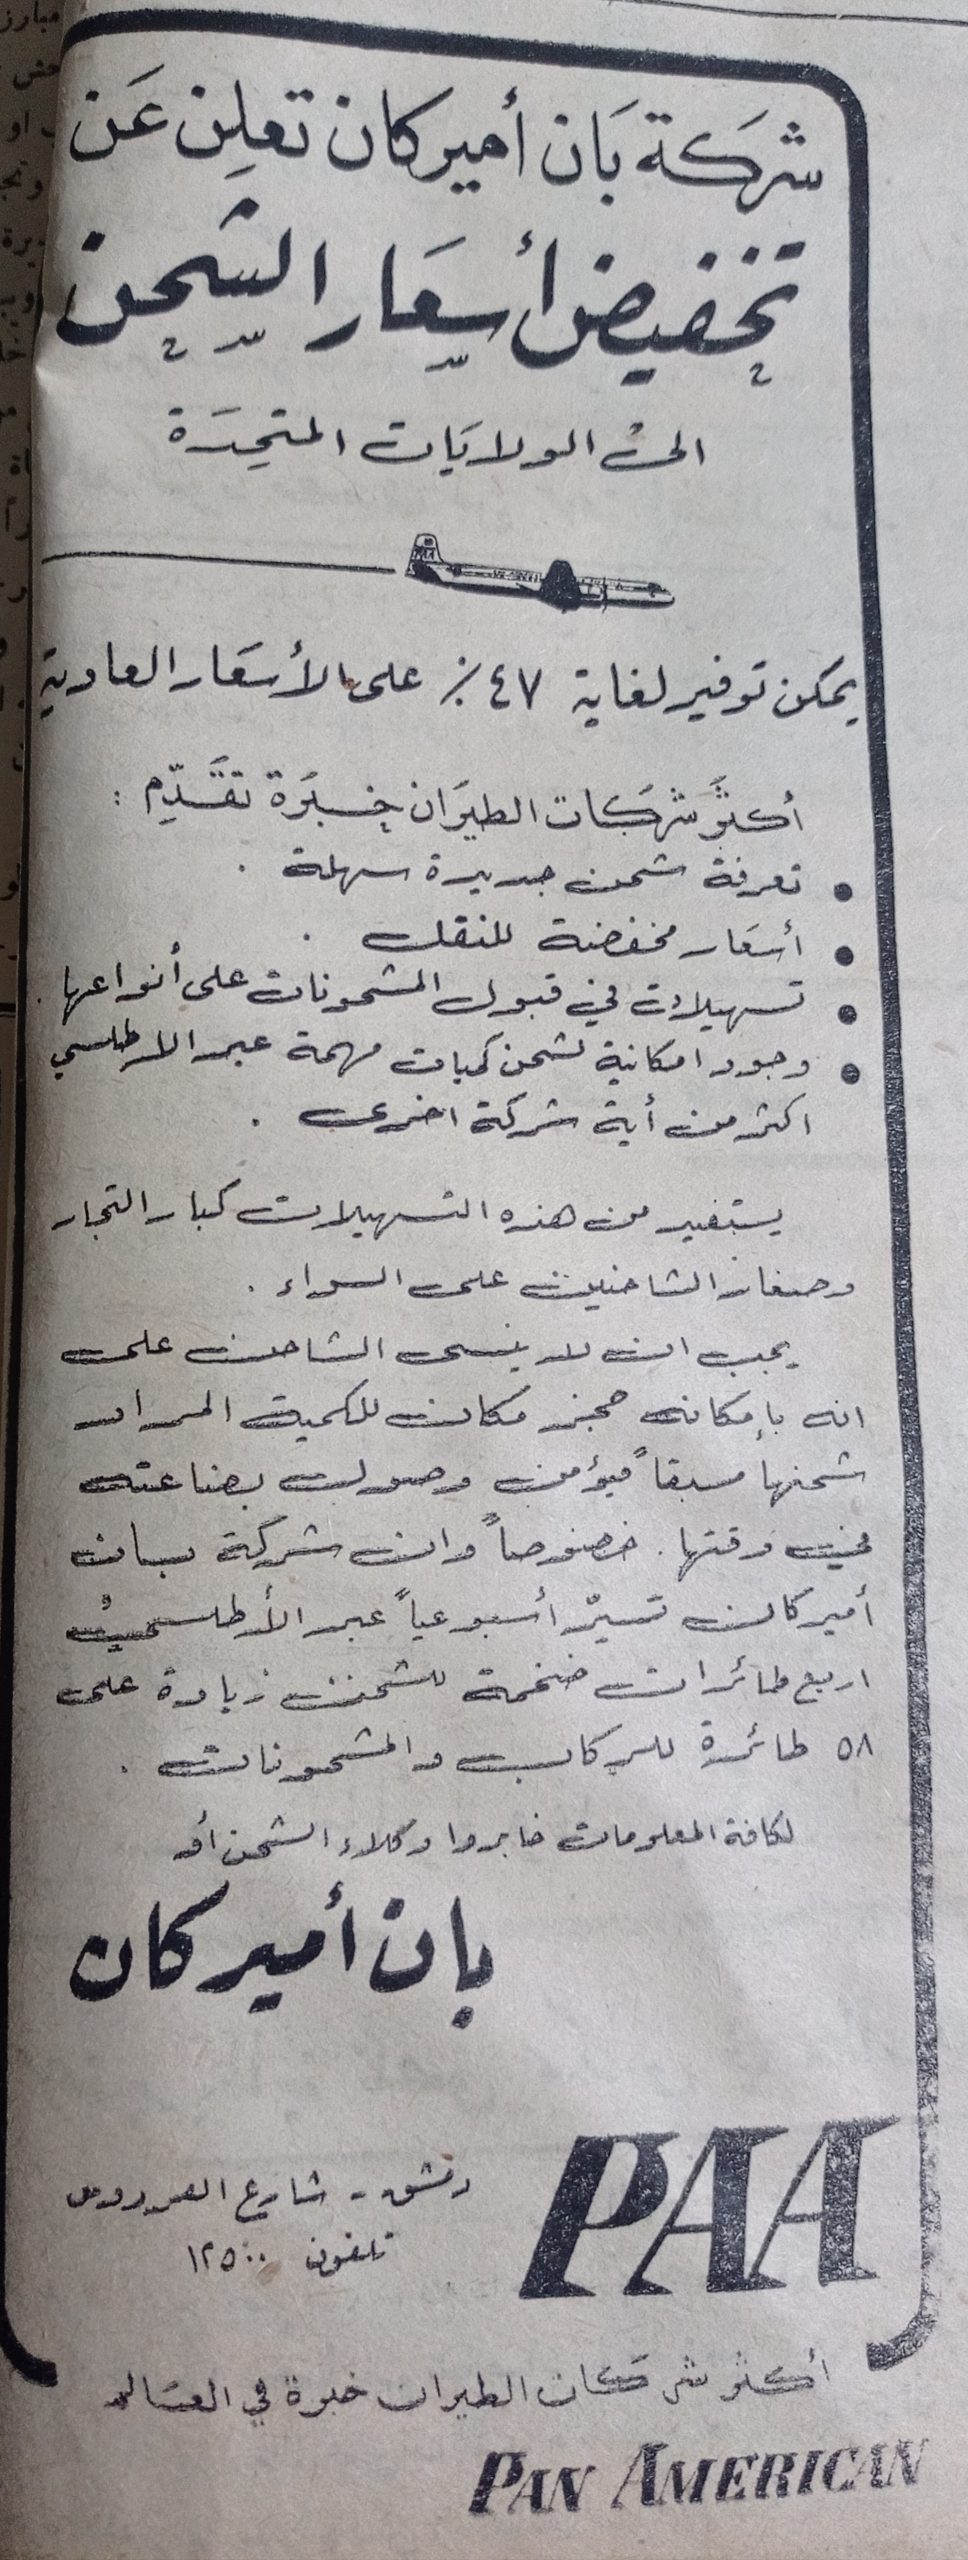 التاريخ السوري المعاصر - إعلان ضمن سلسلة اعلانات للترويج عن شركة بان أمريكان للطيران في سورية عام 1956